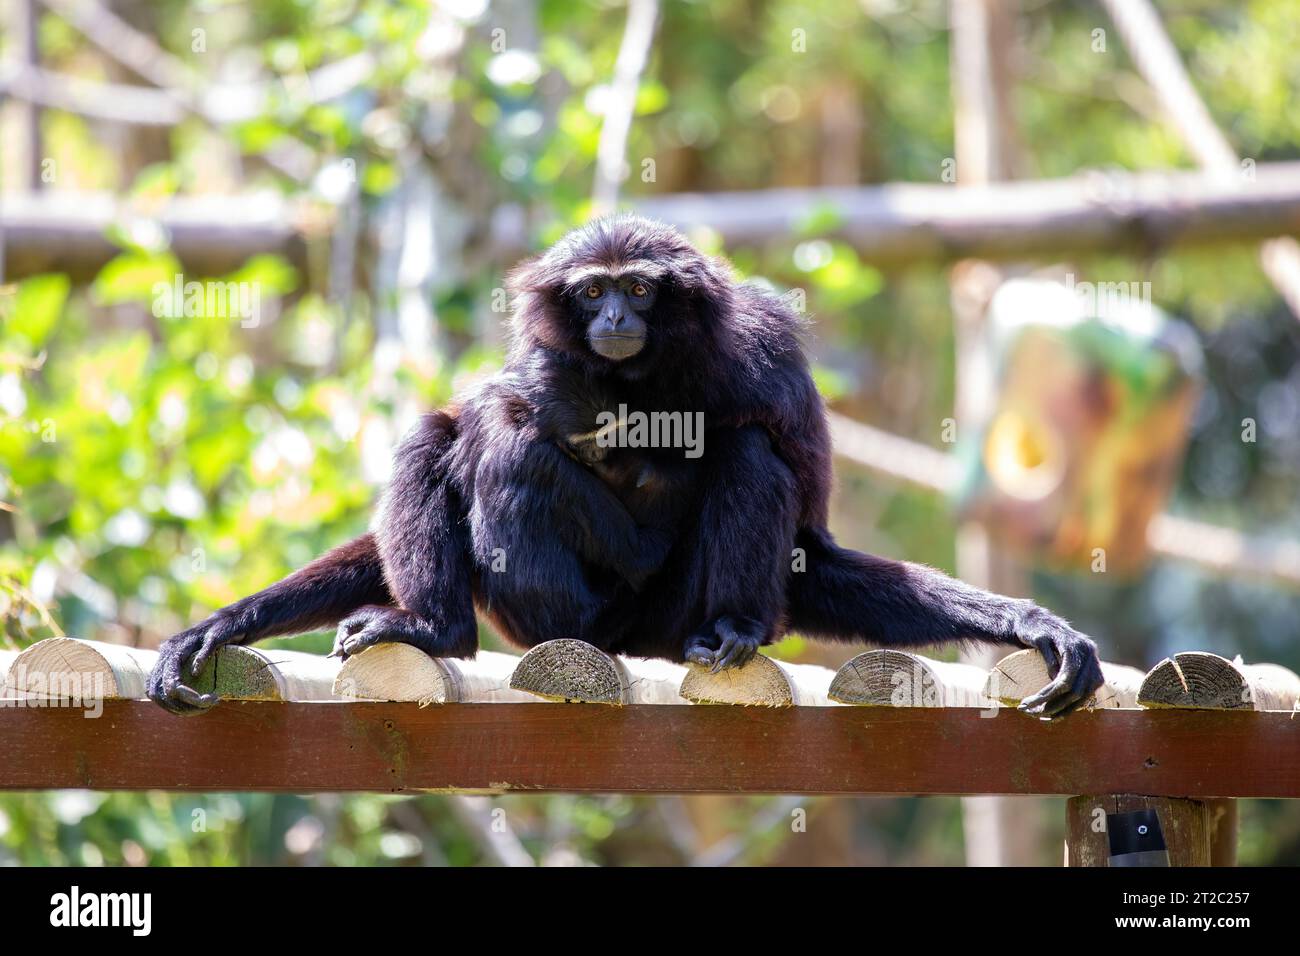 L'agile gibbon è una piccola scimmia originaria delle foreste pluviali del sud-est asiatico. È noto per le sue abilità acrobatiche e la capacità di oscillare attraverso il tre Foto Stock